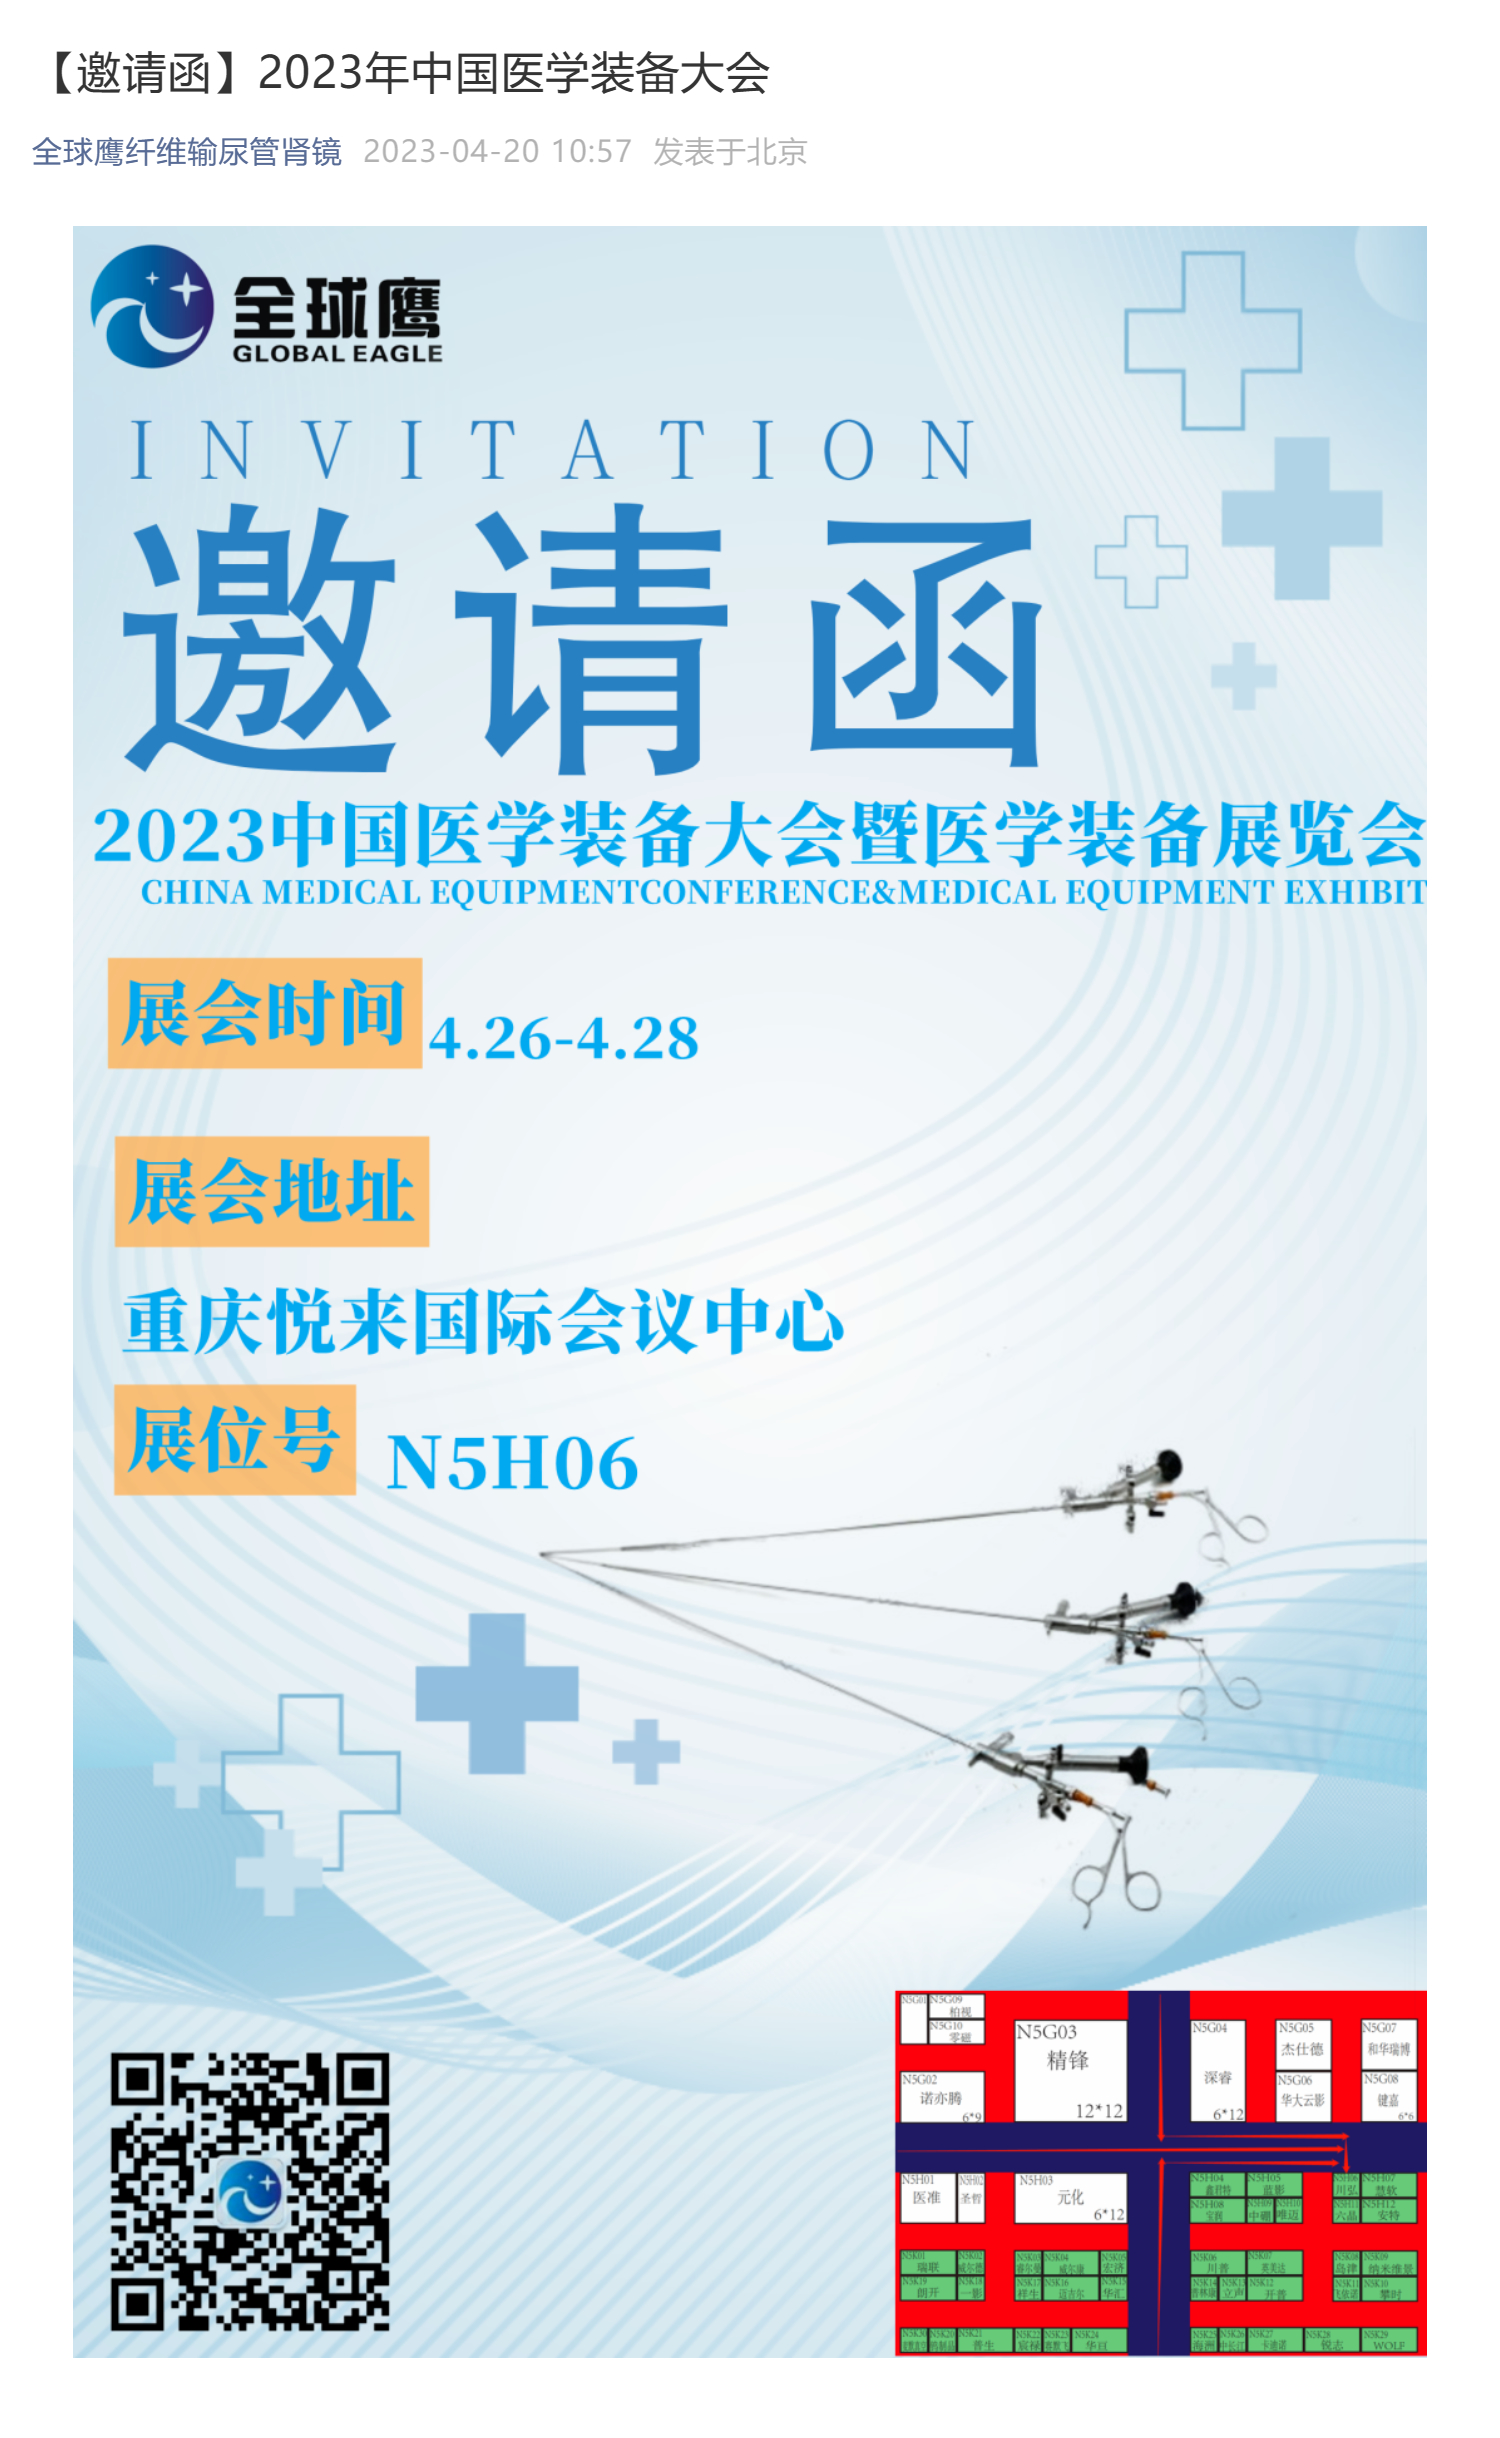 【邀请函】2023年中国医学装备大会_壹伴长图1.jpg